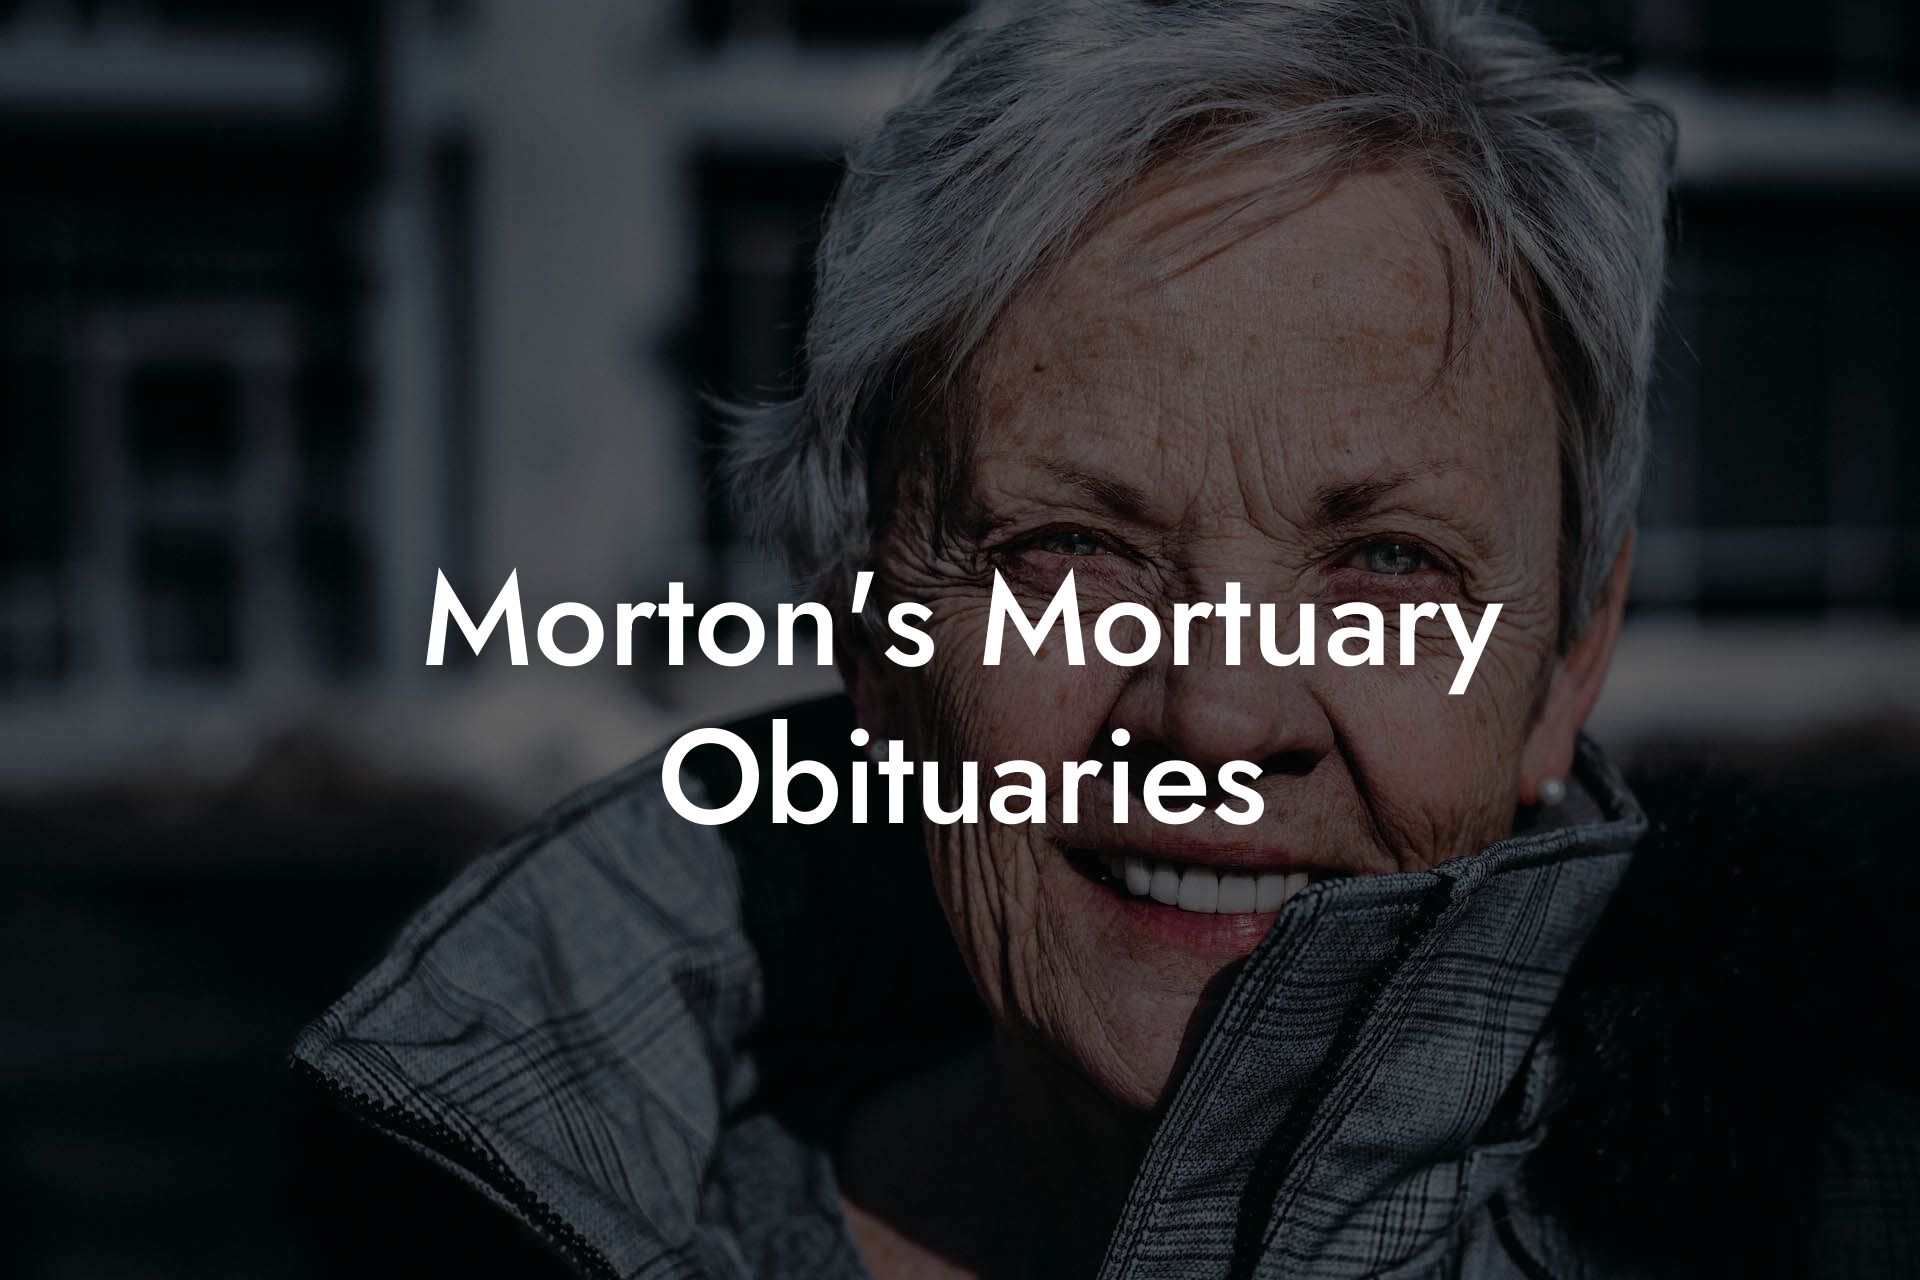 Morton's Mortuary Obituaries